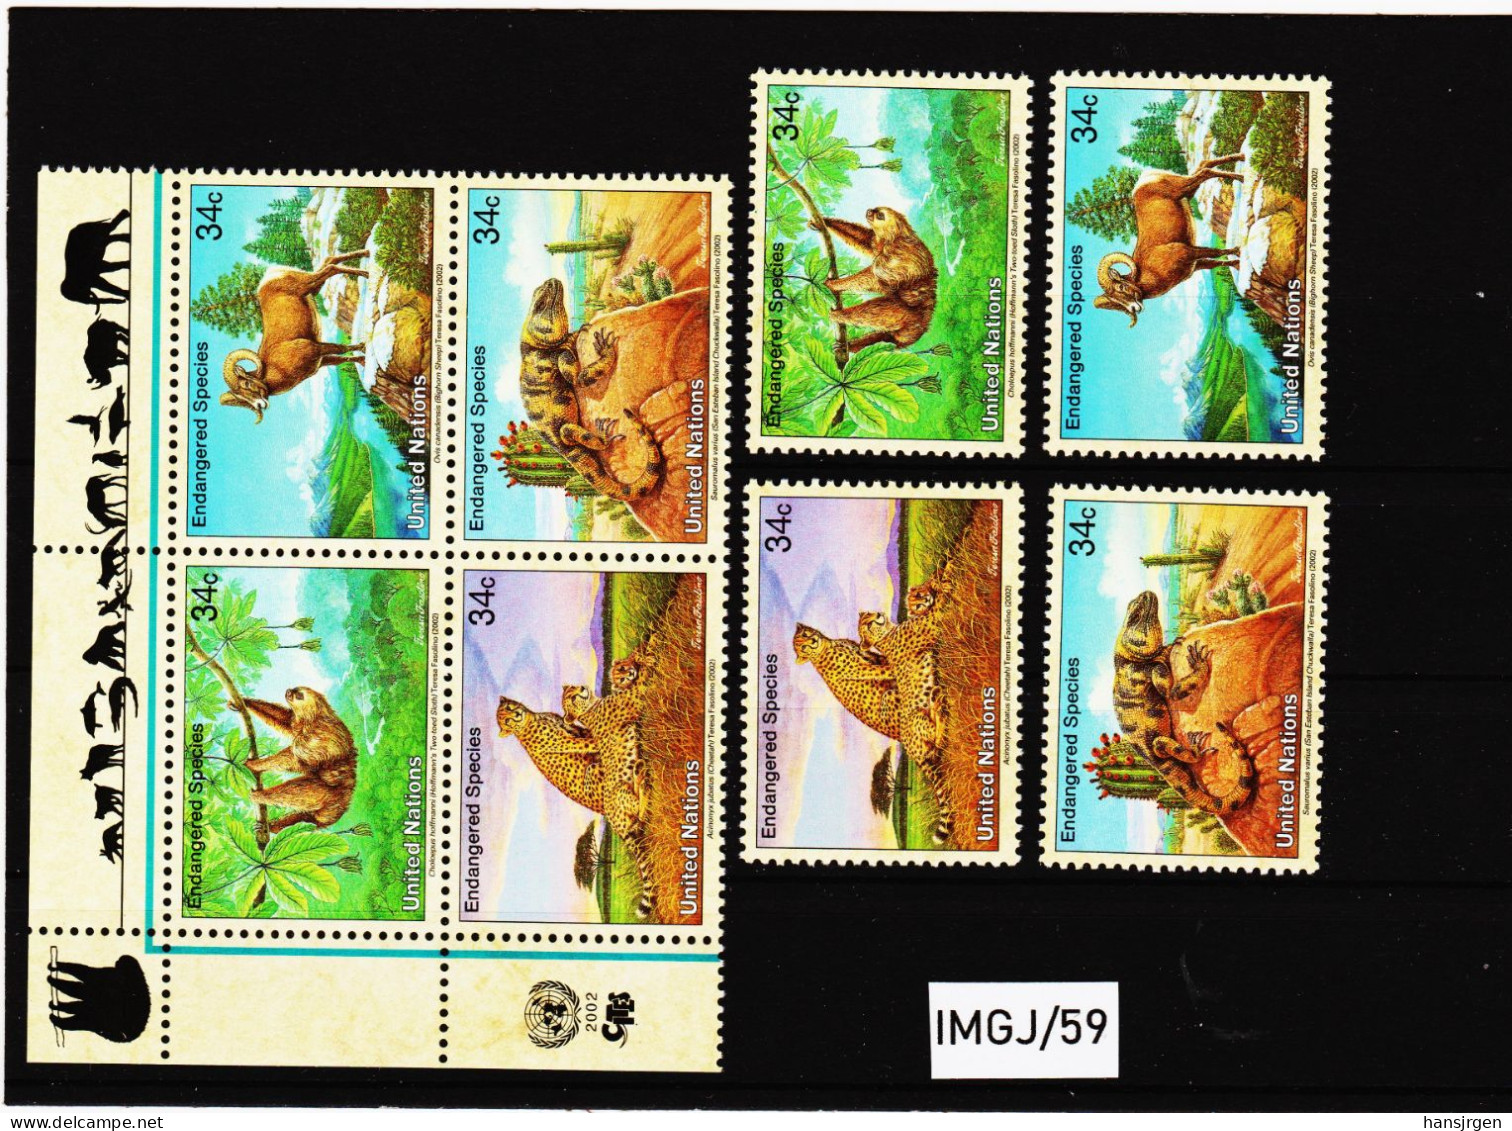 IMG/59 VEREINTE NATIONEN NEW YORK 2002 Michl  890/93  VIERERBLOCK + SATZ  ** Postfrisch SIEHE ABBILDUNG - Unused Stamps